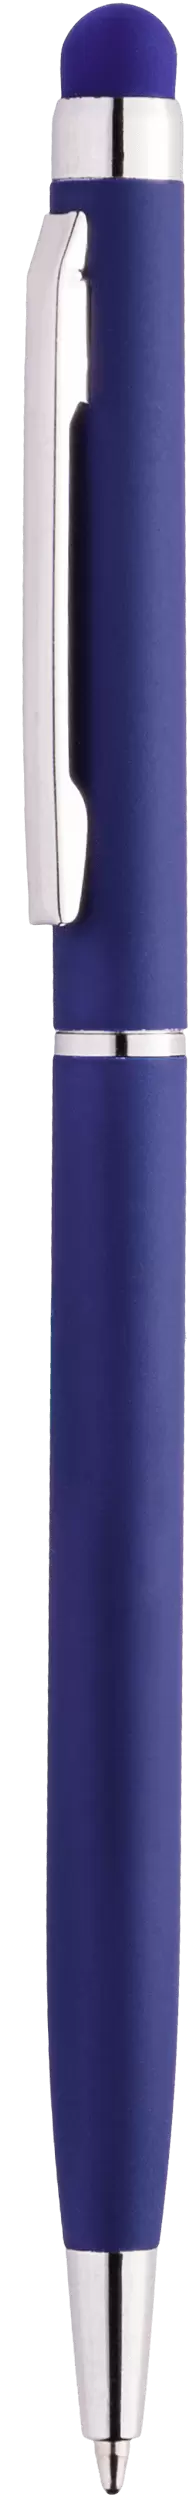 Ручка KENO SOFT Темно-синяя 1116-14